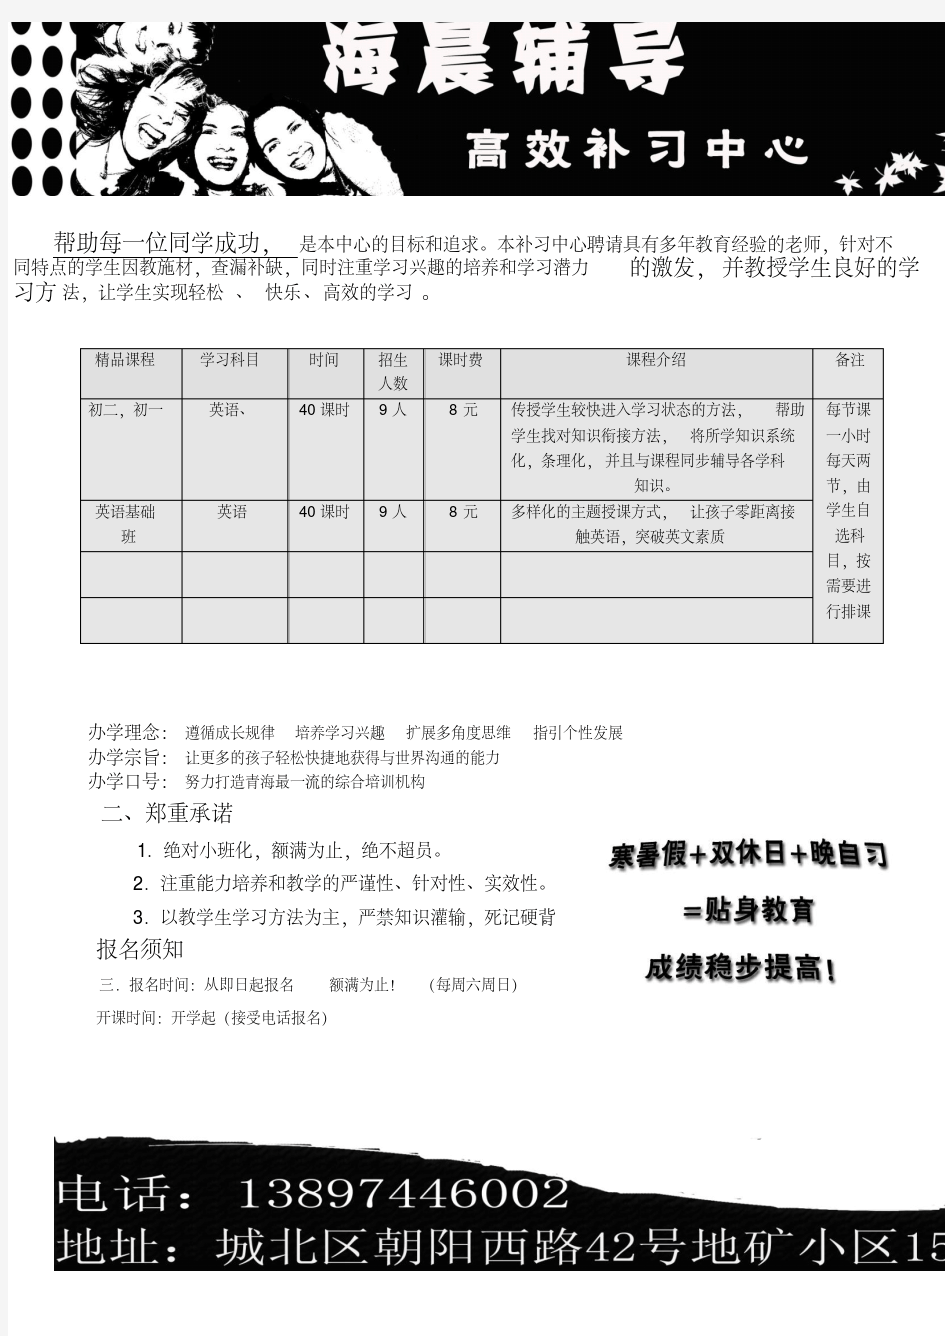 中小学辅导班招生简章-精选.pdf